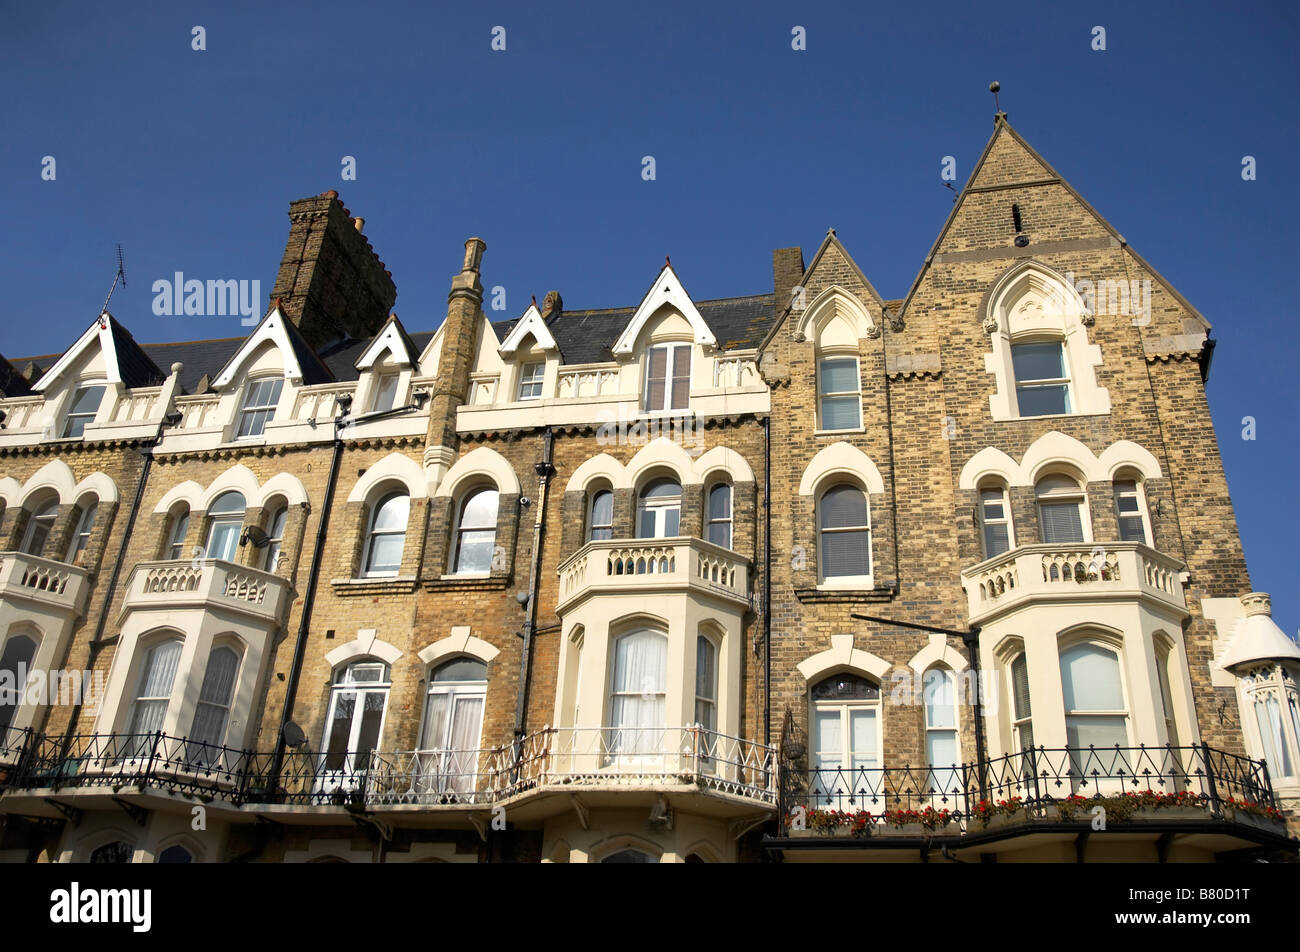 Una hilera de casas de estilo victoriano en Inglaterra Foto de stock